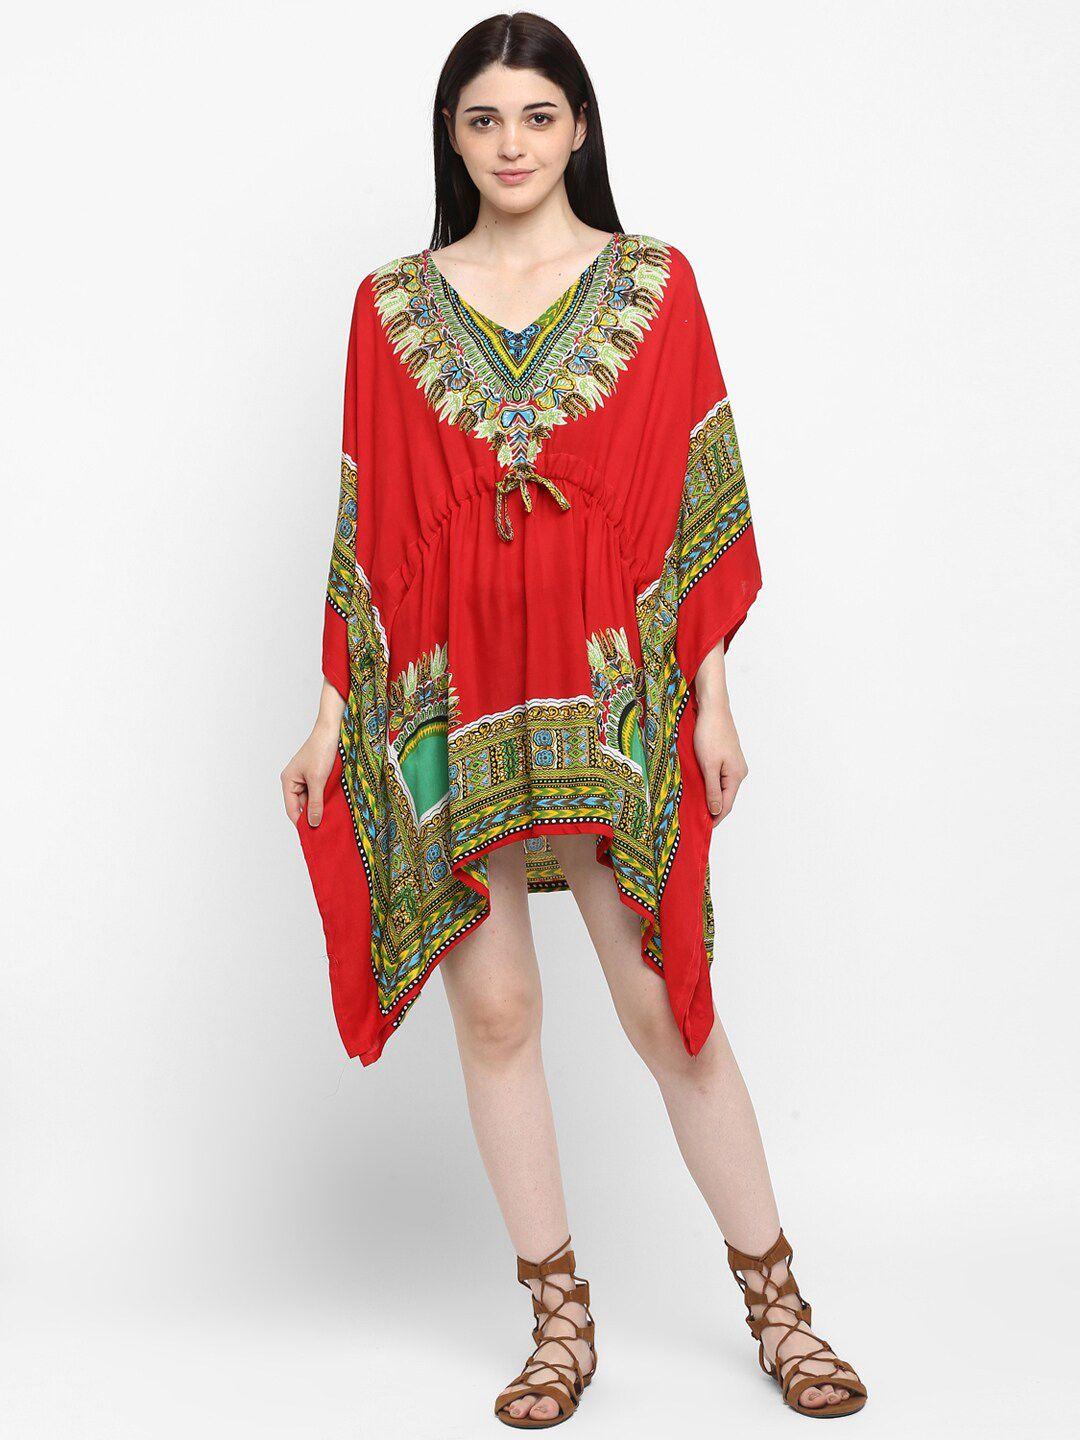 aditi wasan red & green ethnic motifs chiffon kaftan dress